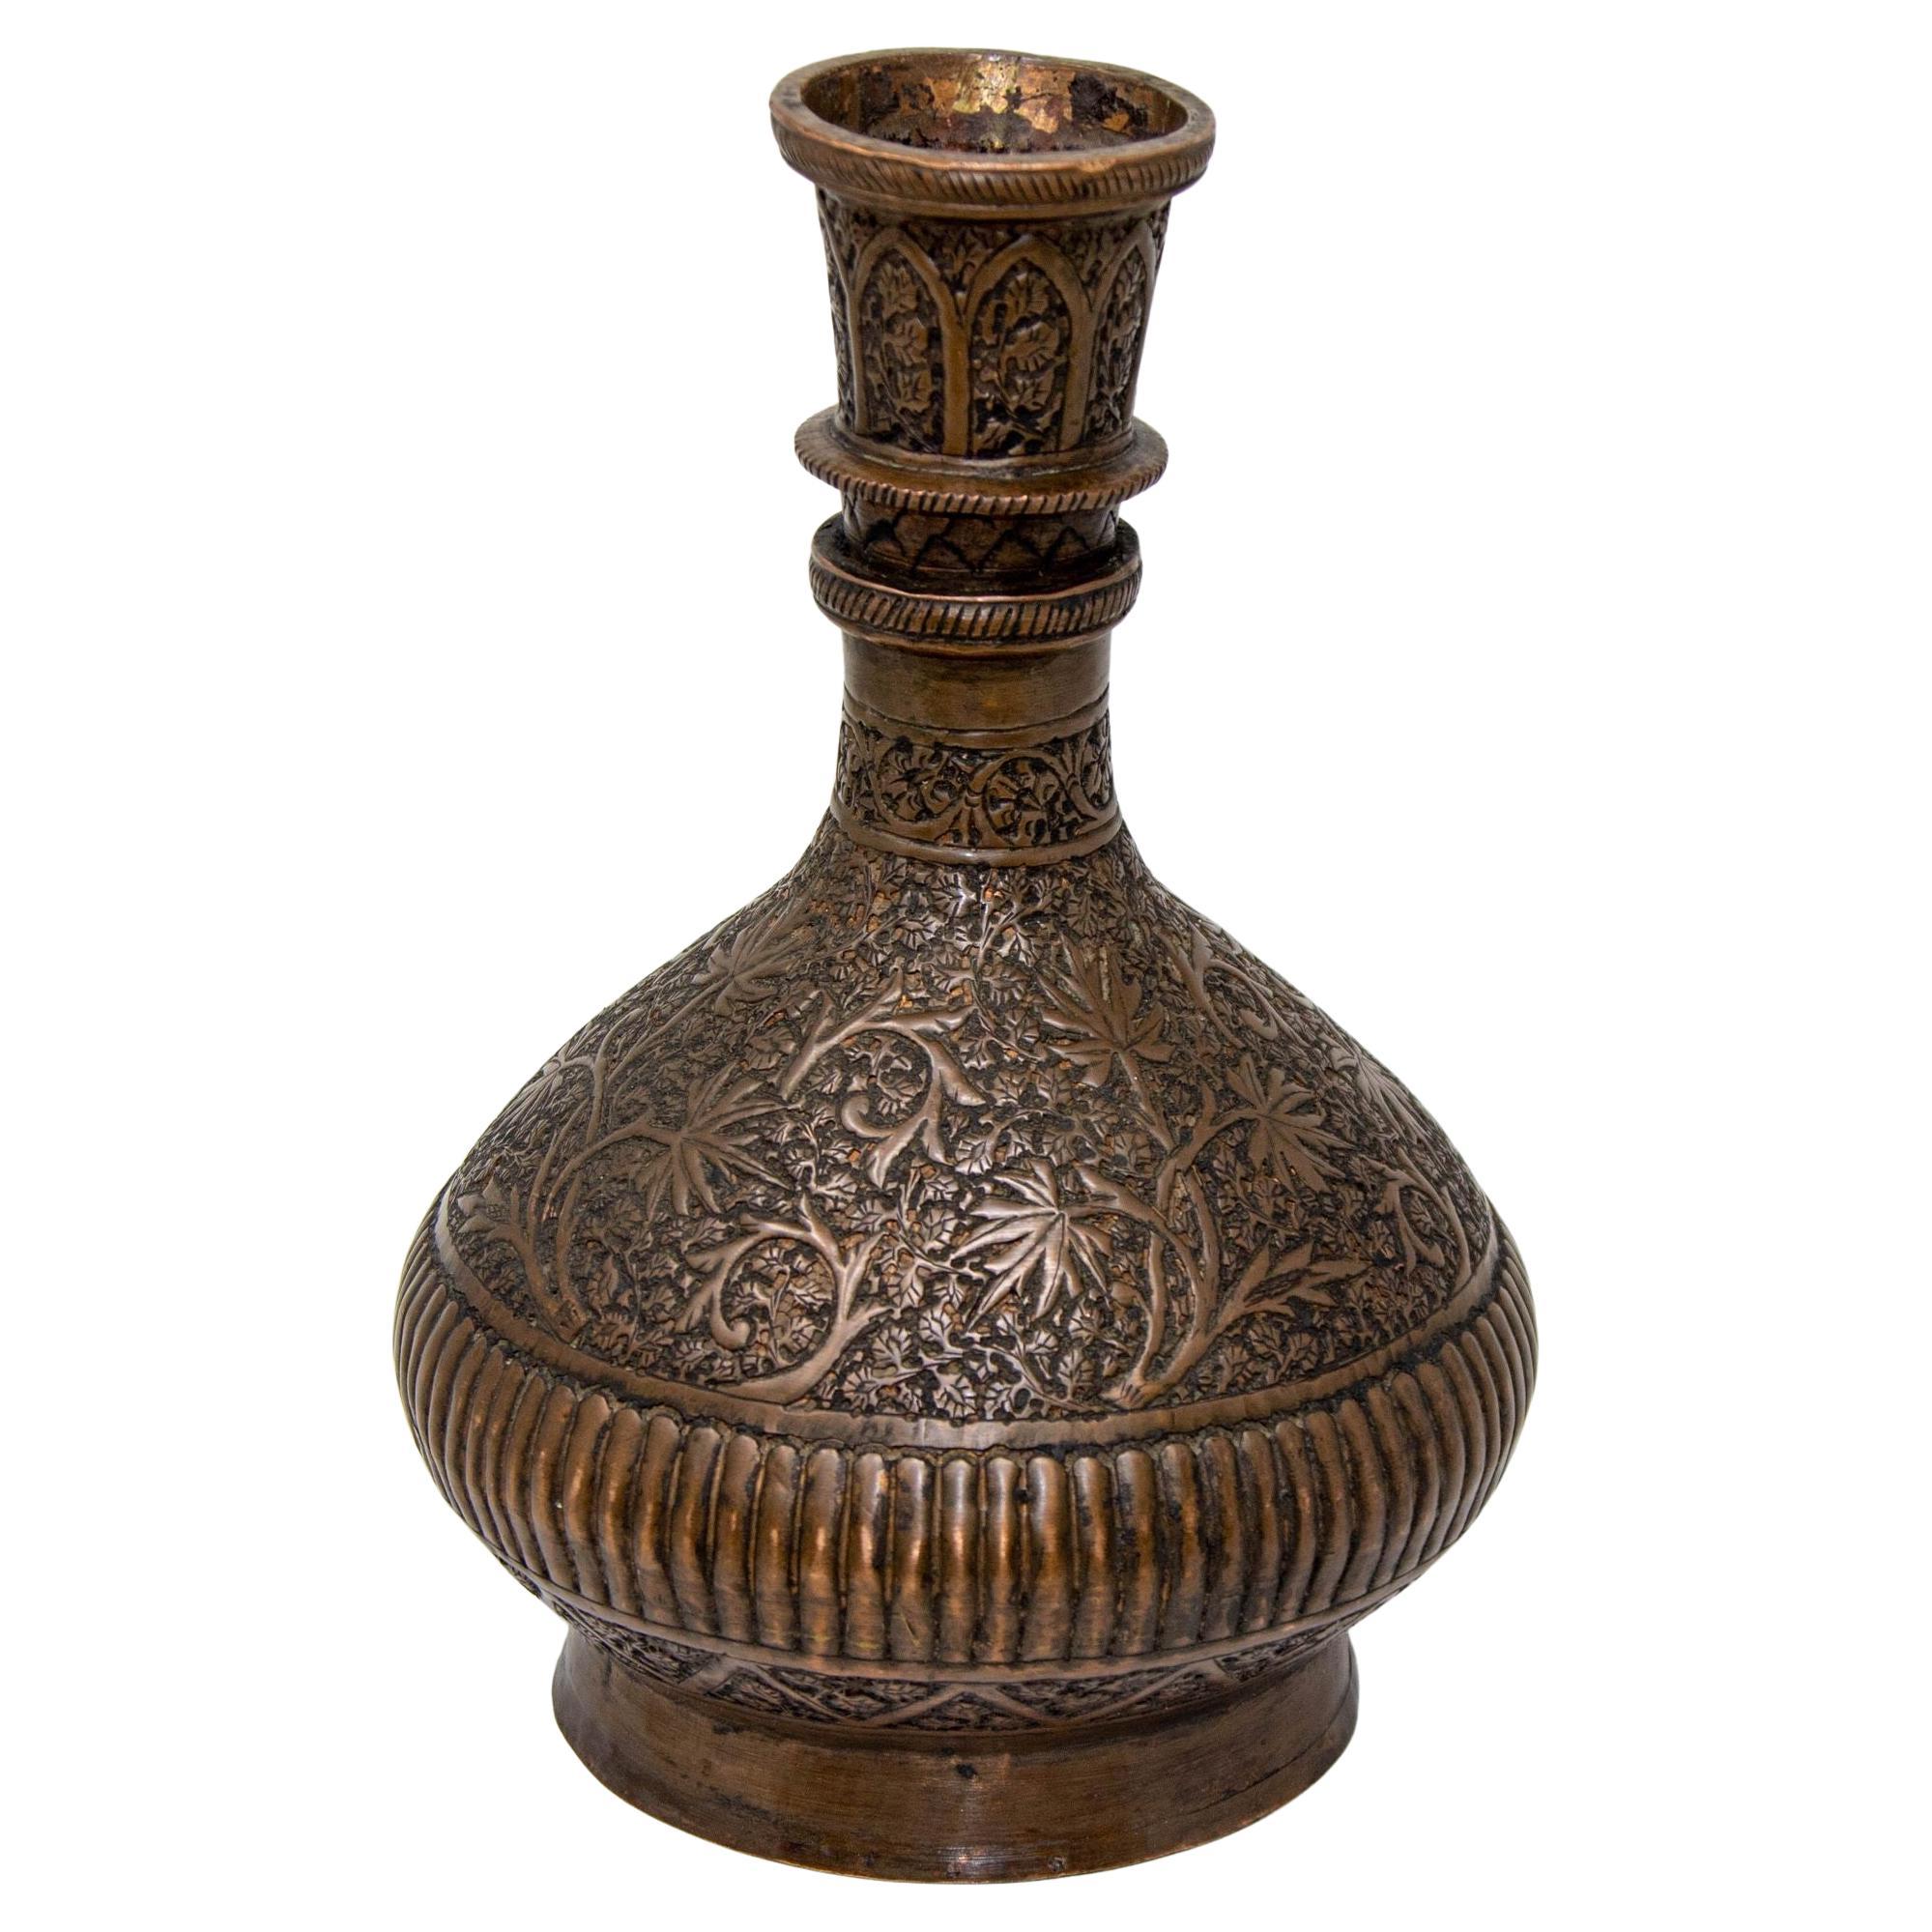 Antique Tinned Copper Indo-Persian Islamic Vase 19th Century